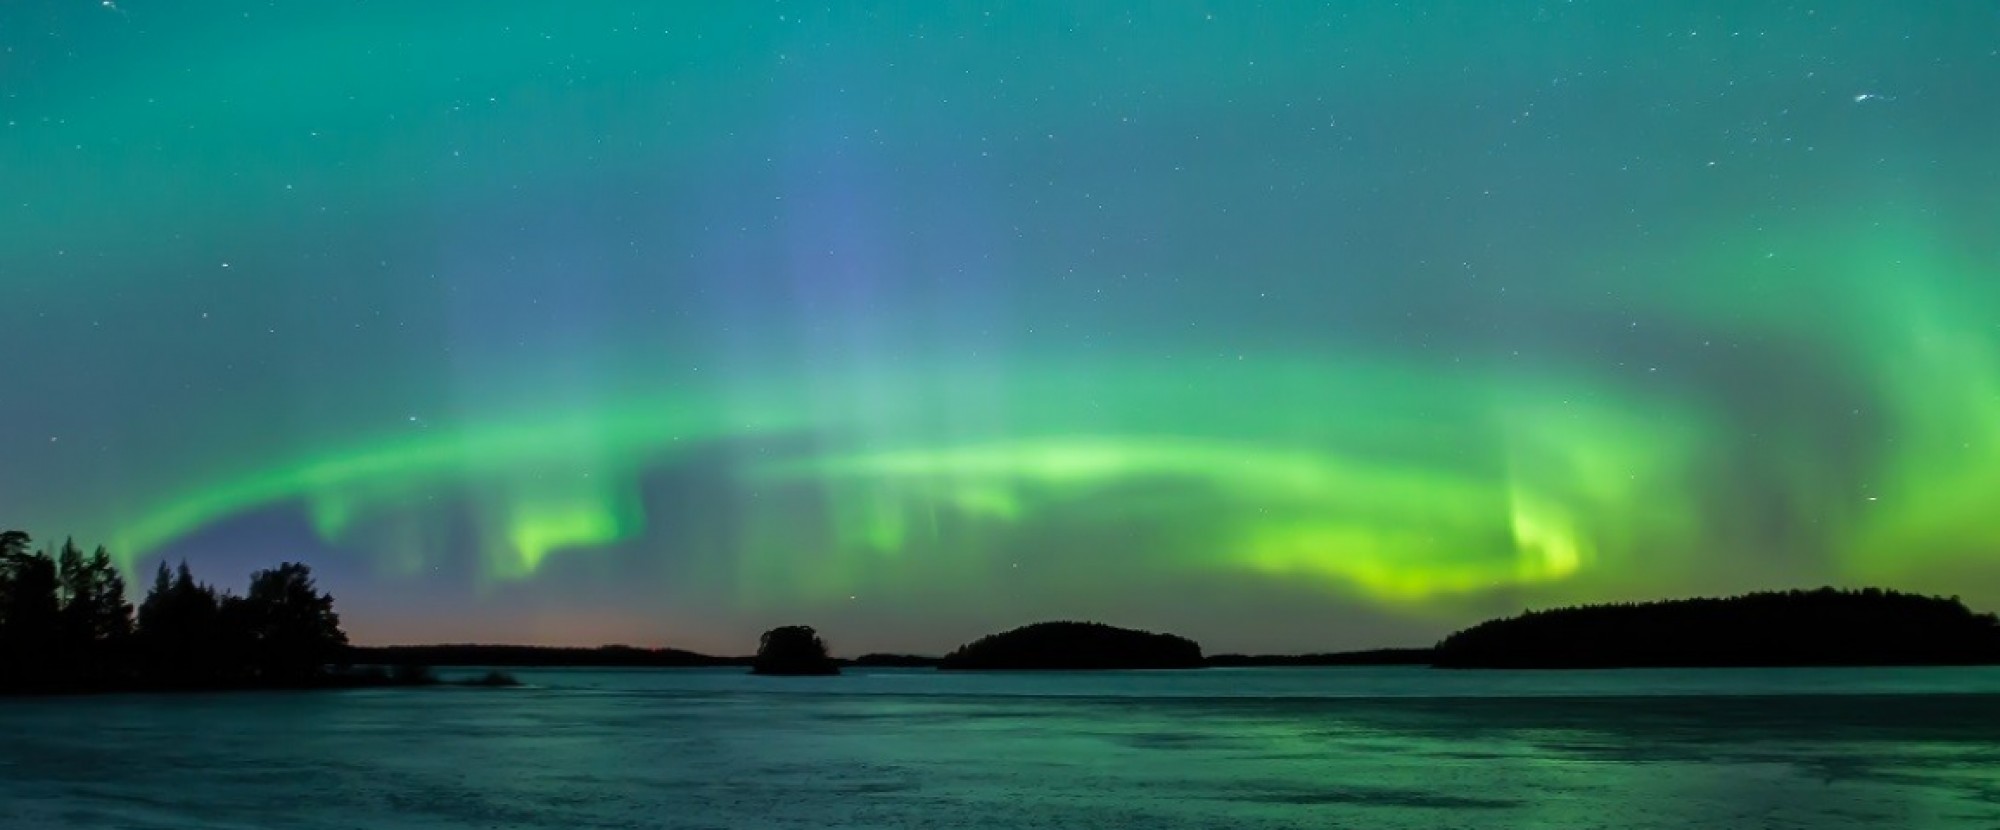 13DLet’s Go Aurora Lapland Finland, Norway & Sweden + Abisko thumbnail 774